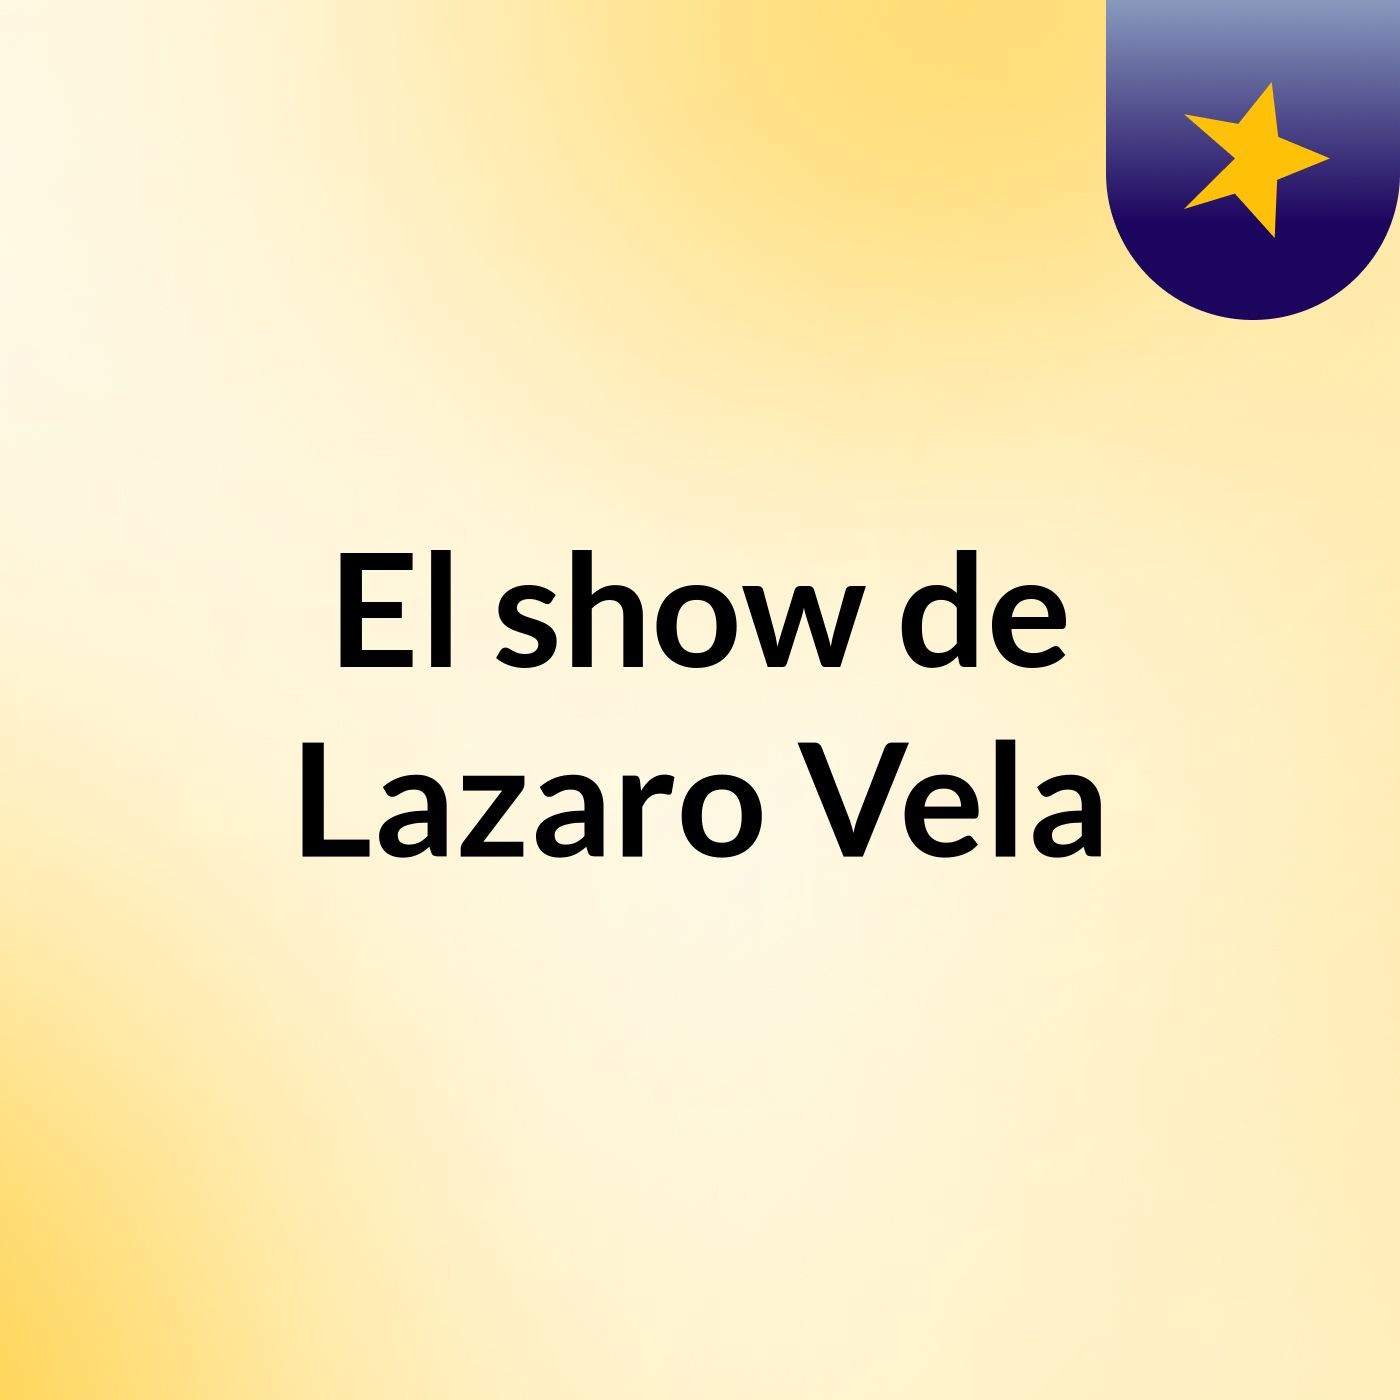 El show de Lazaro Vela